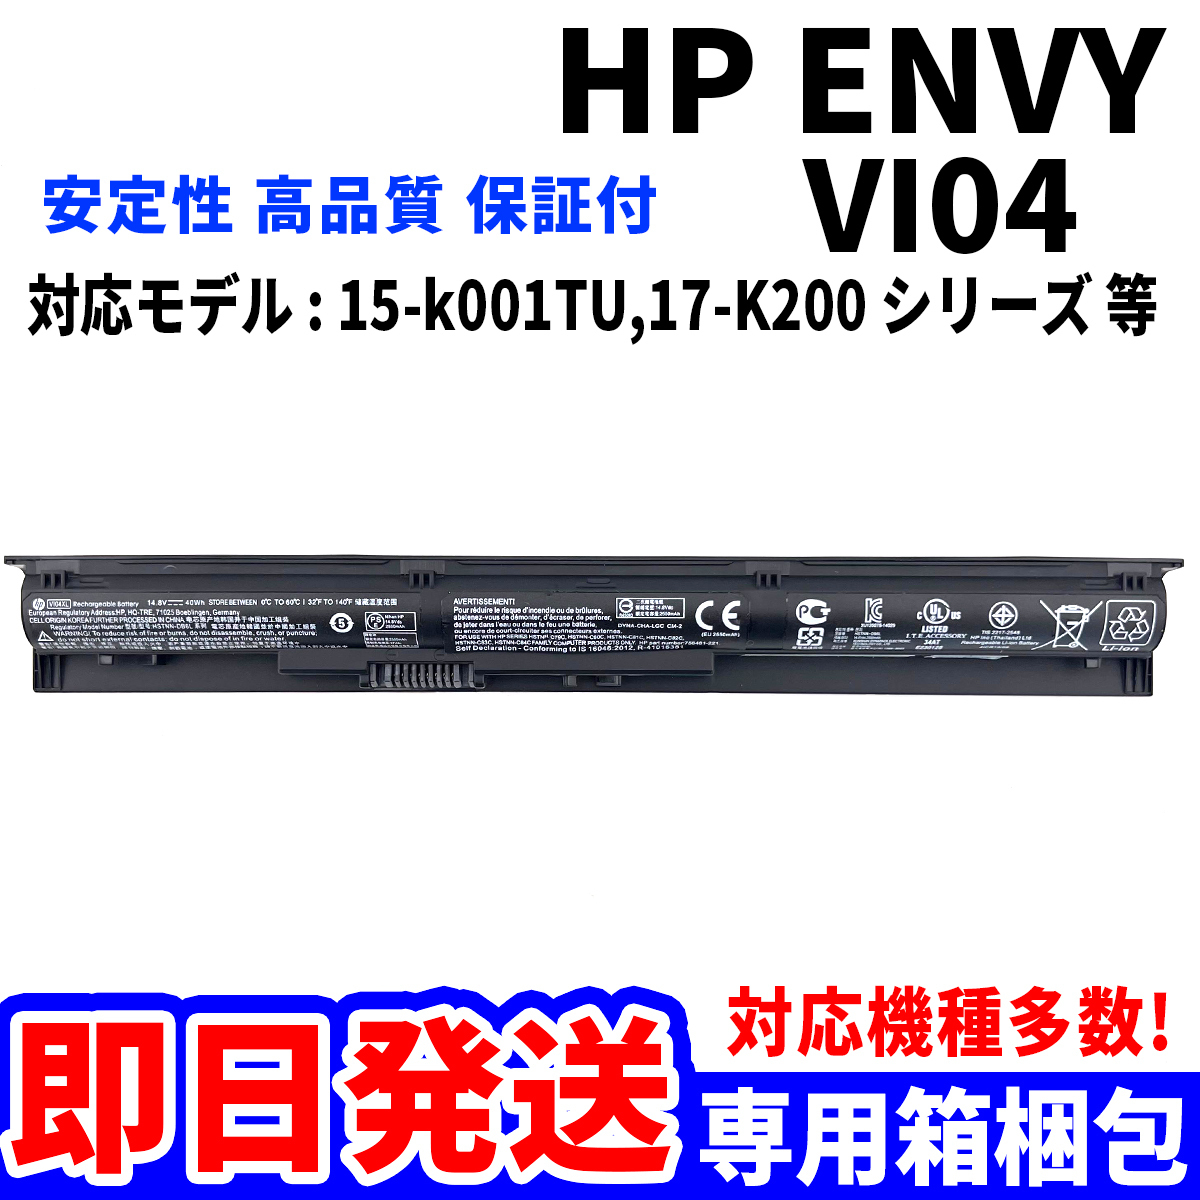 純正新品! HP ENVY VI04 バッテリー 15-k001TU 17-K200 シリーズ 電池パック交換 パソコン 内蔵battery 単品